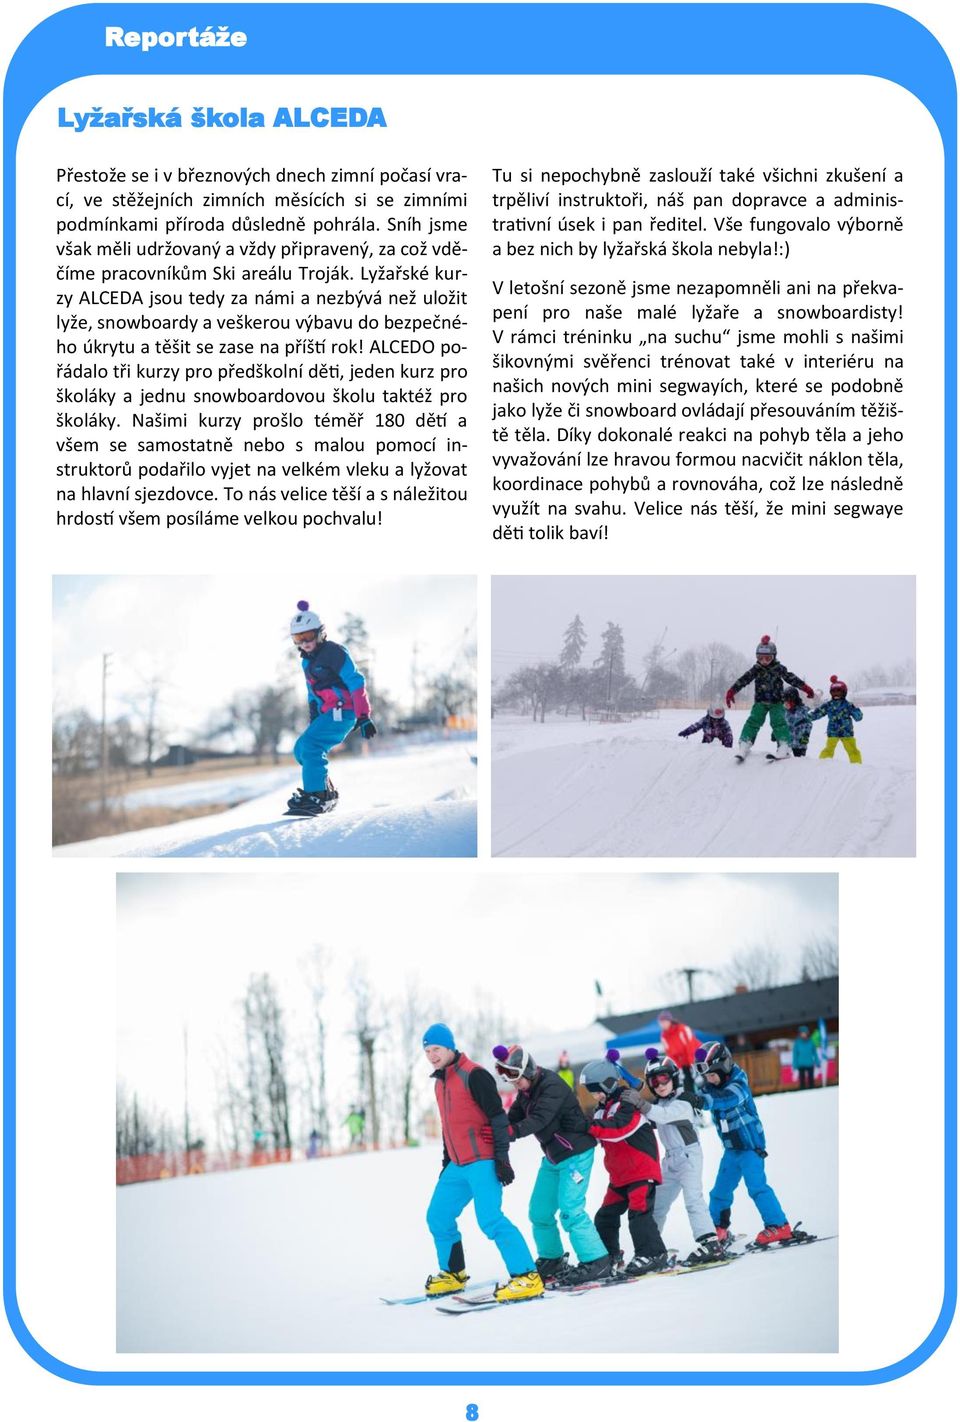 Lyžařské kurzy ALCEDA jsou tedy za námi a nezbývá než uložit lyže, snowboardy a veškerou výbavu do bezpečného úkrytu a těšit se zase na příští rok!